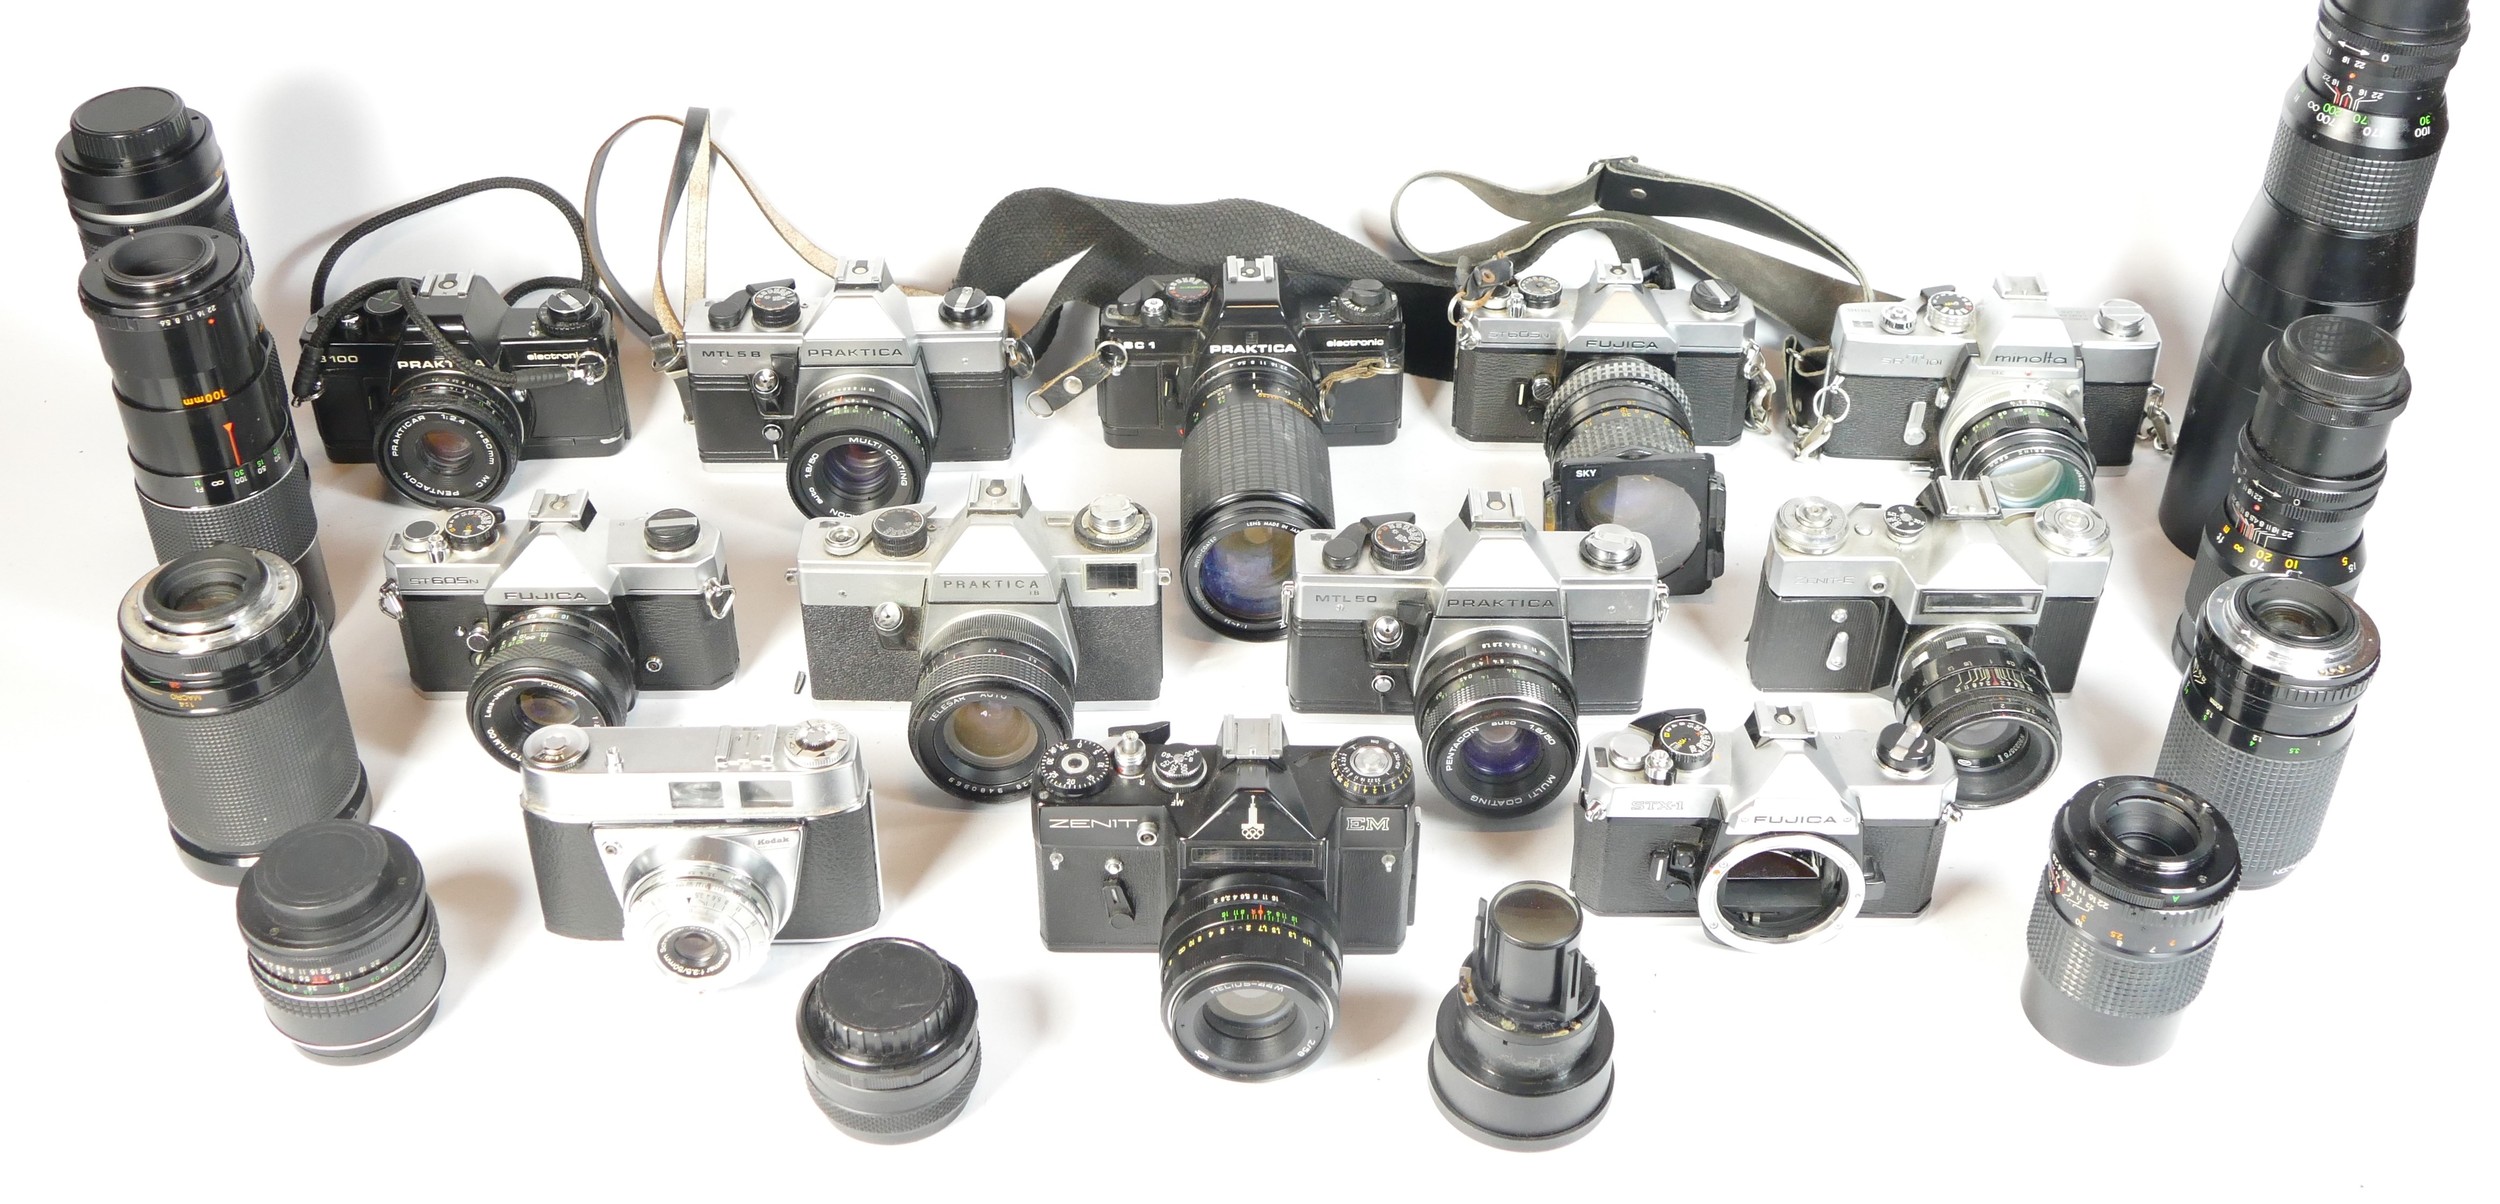 Twelve SLR vintage film cameras to include a Praktica B100, a Zenit E, a Fujica STX-1 and a